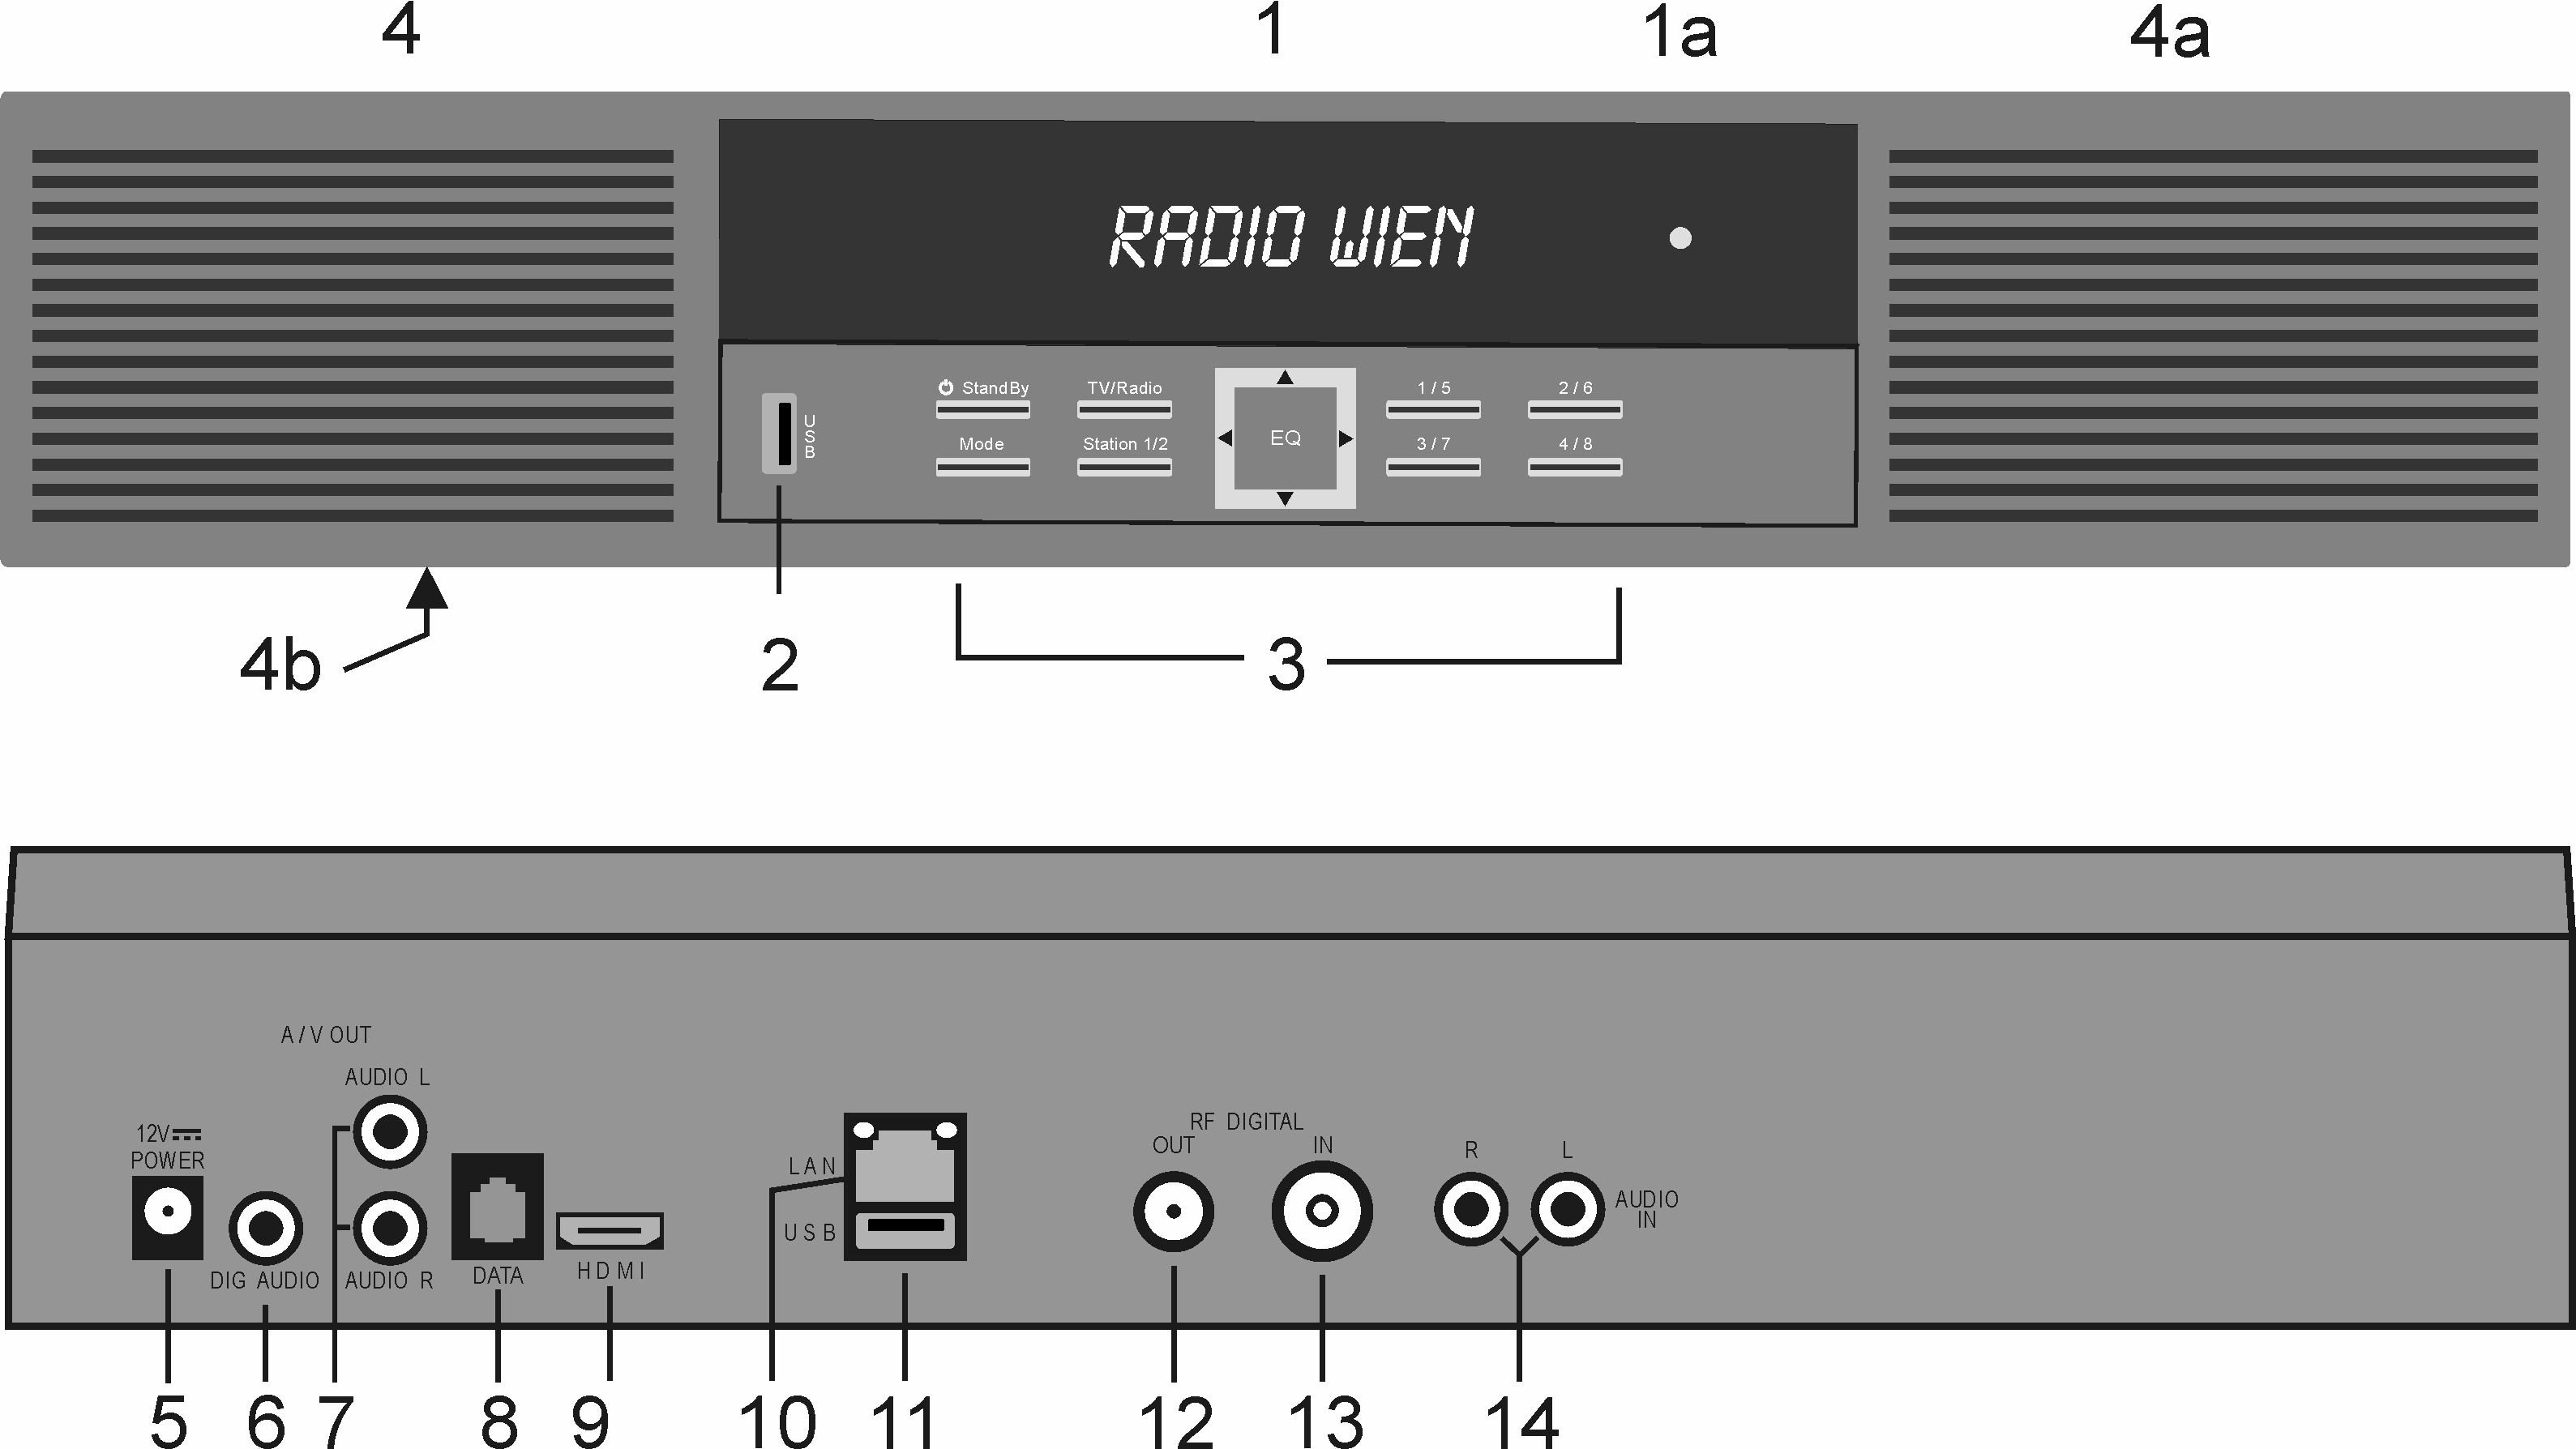 Bedienelemente, Anzeigen, Anschlüsse und Lautsprecher Bedienelemente, Anzeigen, Anschlüsse und Lautsprecher Gerätevorderseite 1 VFD-Displayanzeige 1a LED-Anzeige (Standby-Betrieb): 2 USB-Buchse